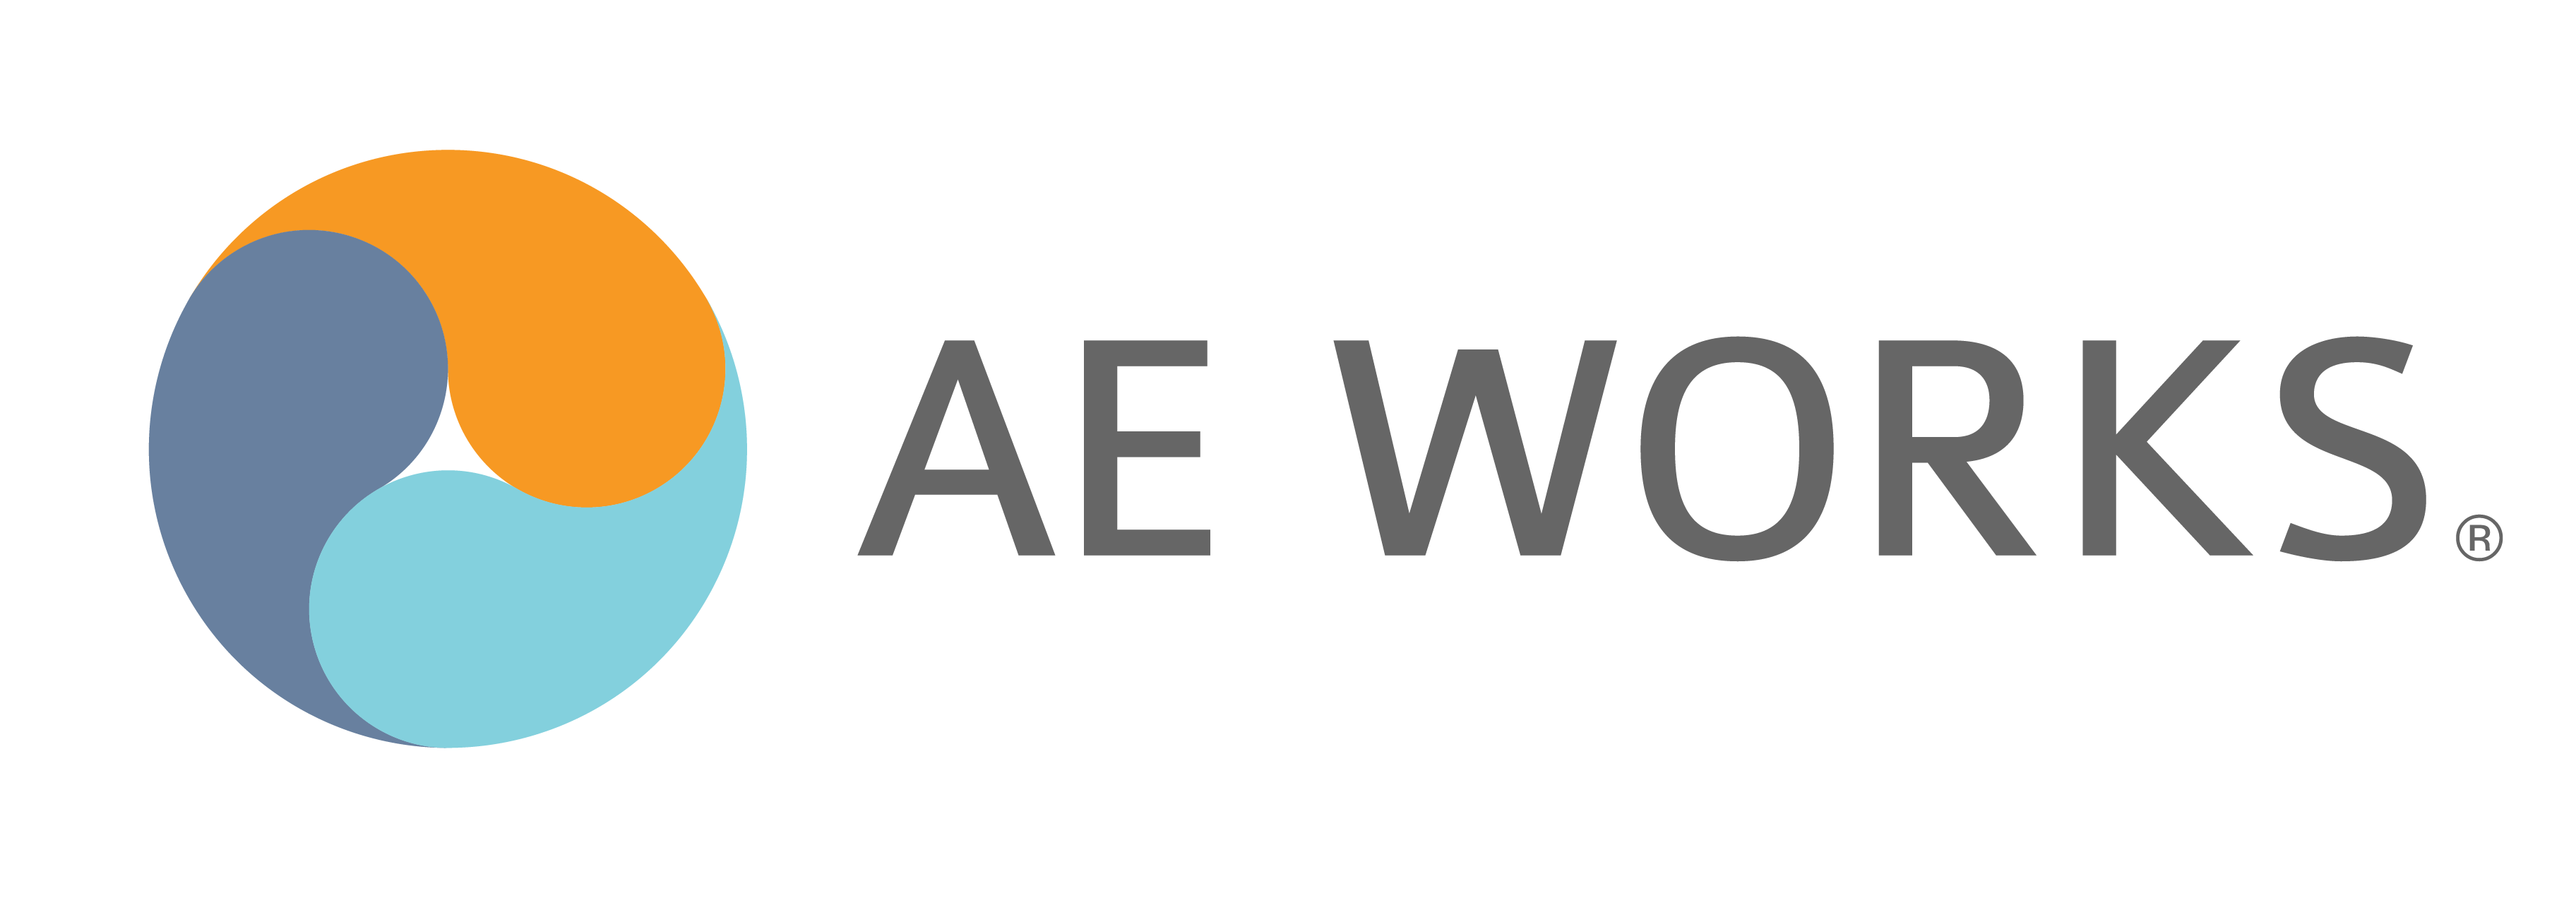 AE Works logo